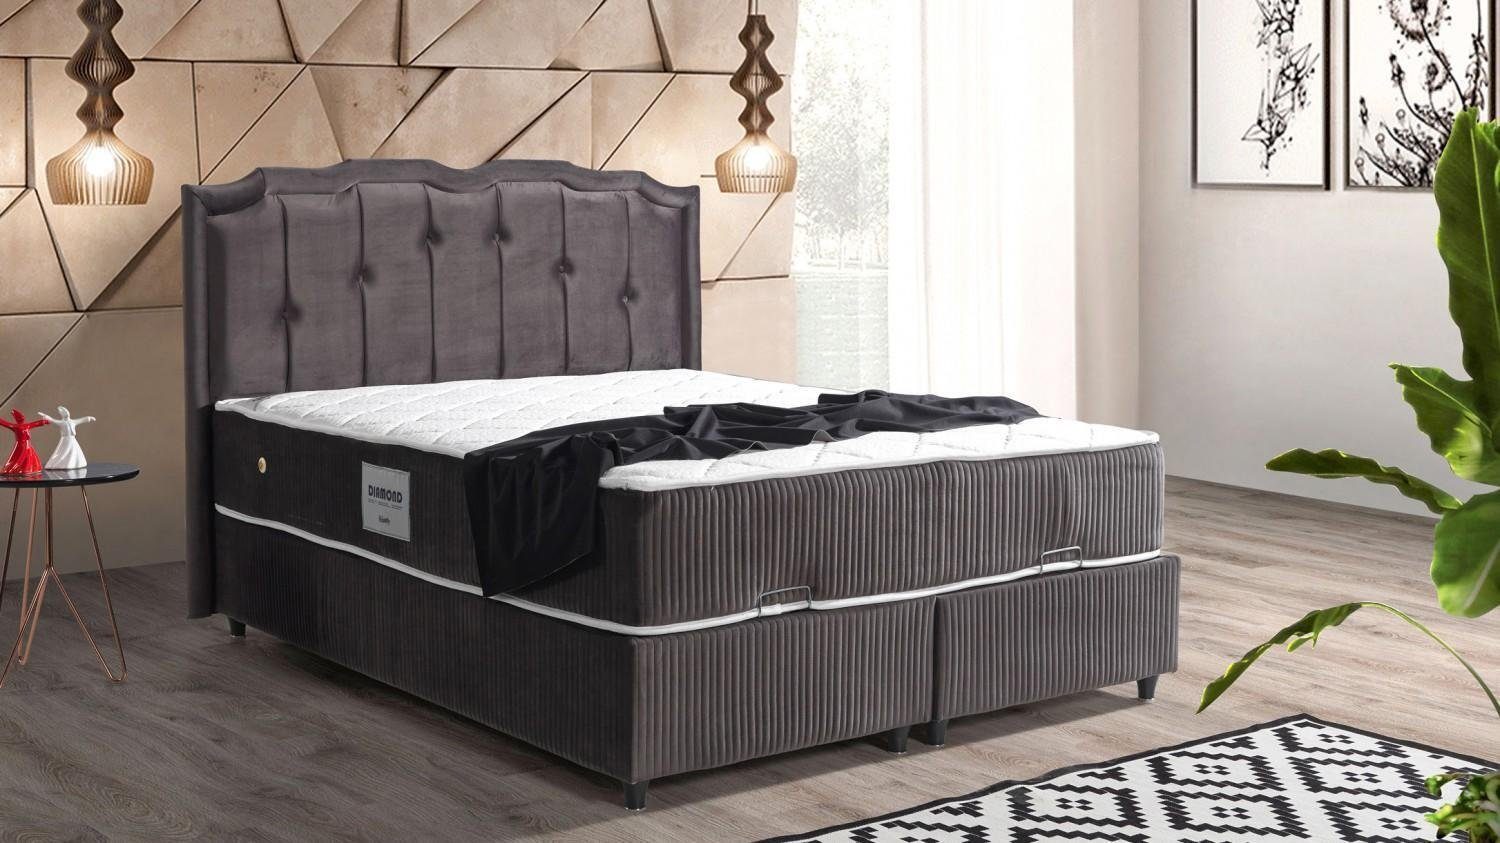 JVmoebel Bett Bett Design Betten Luxus Polster Schlafzimmer Möbel Boxsping Braun (Bett)